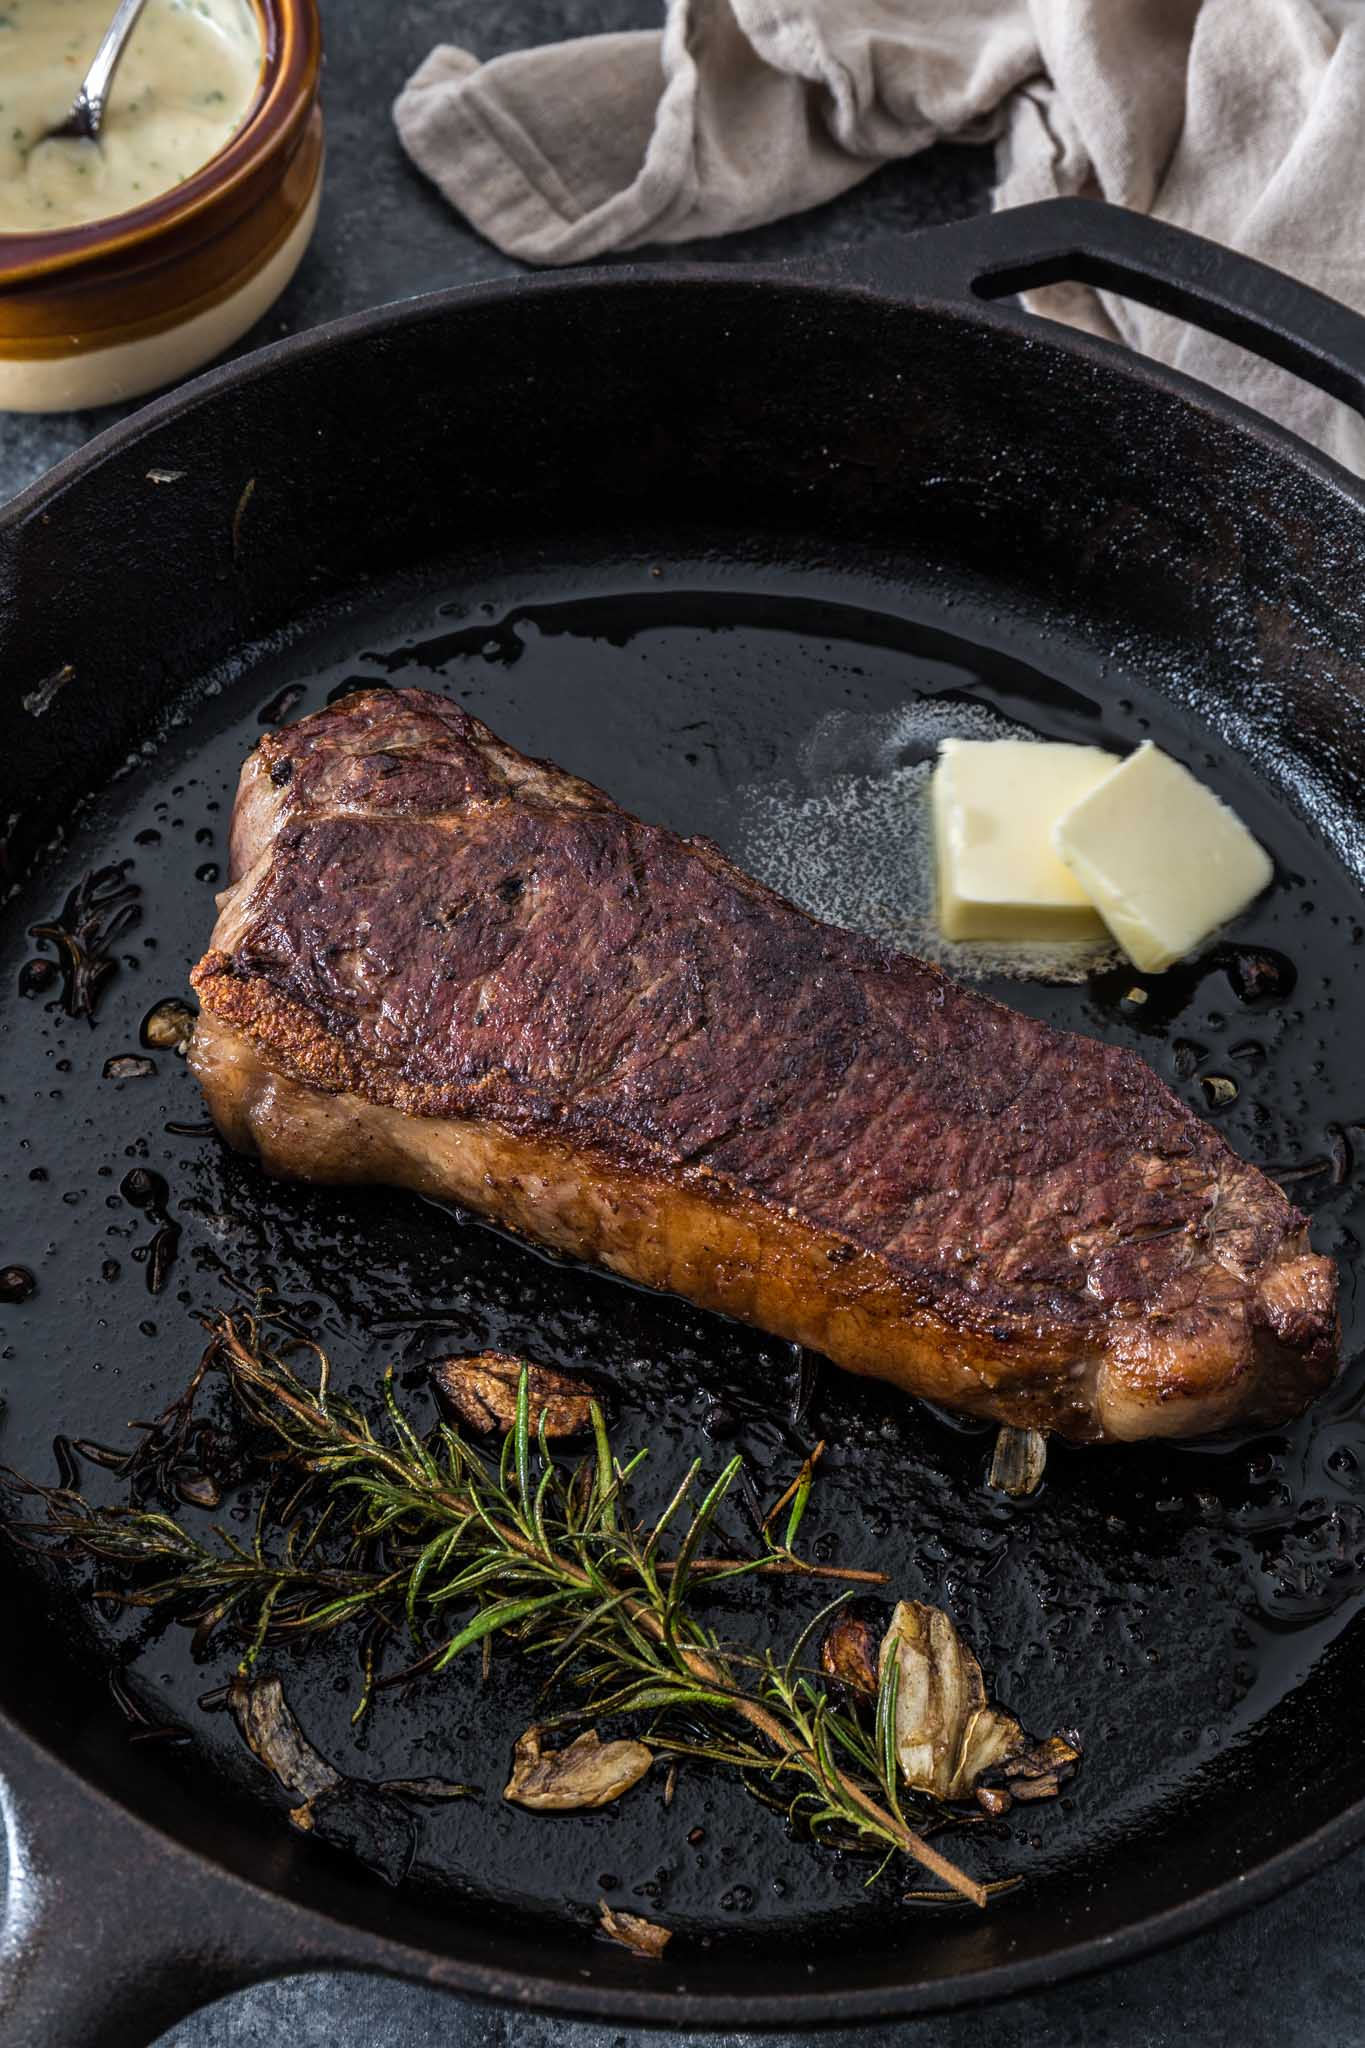 https://heartstonefarm.com/cdn/shop/files/pan-seared-ny-strip-steak.jpg?v=1701899251&width=1445